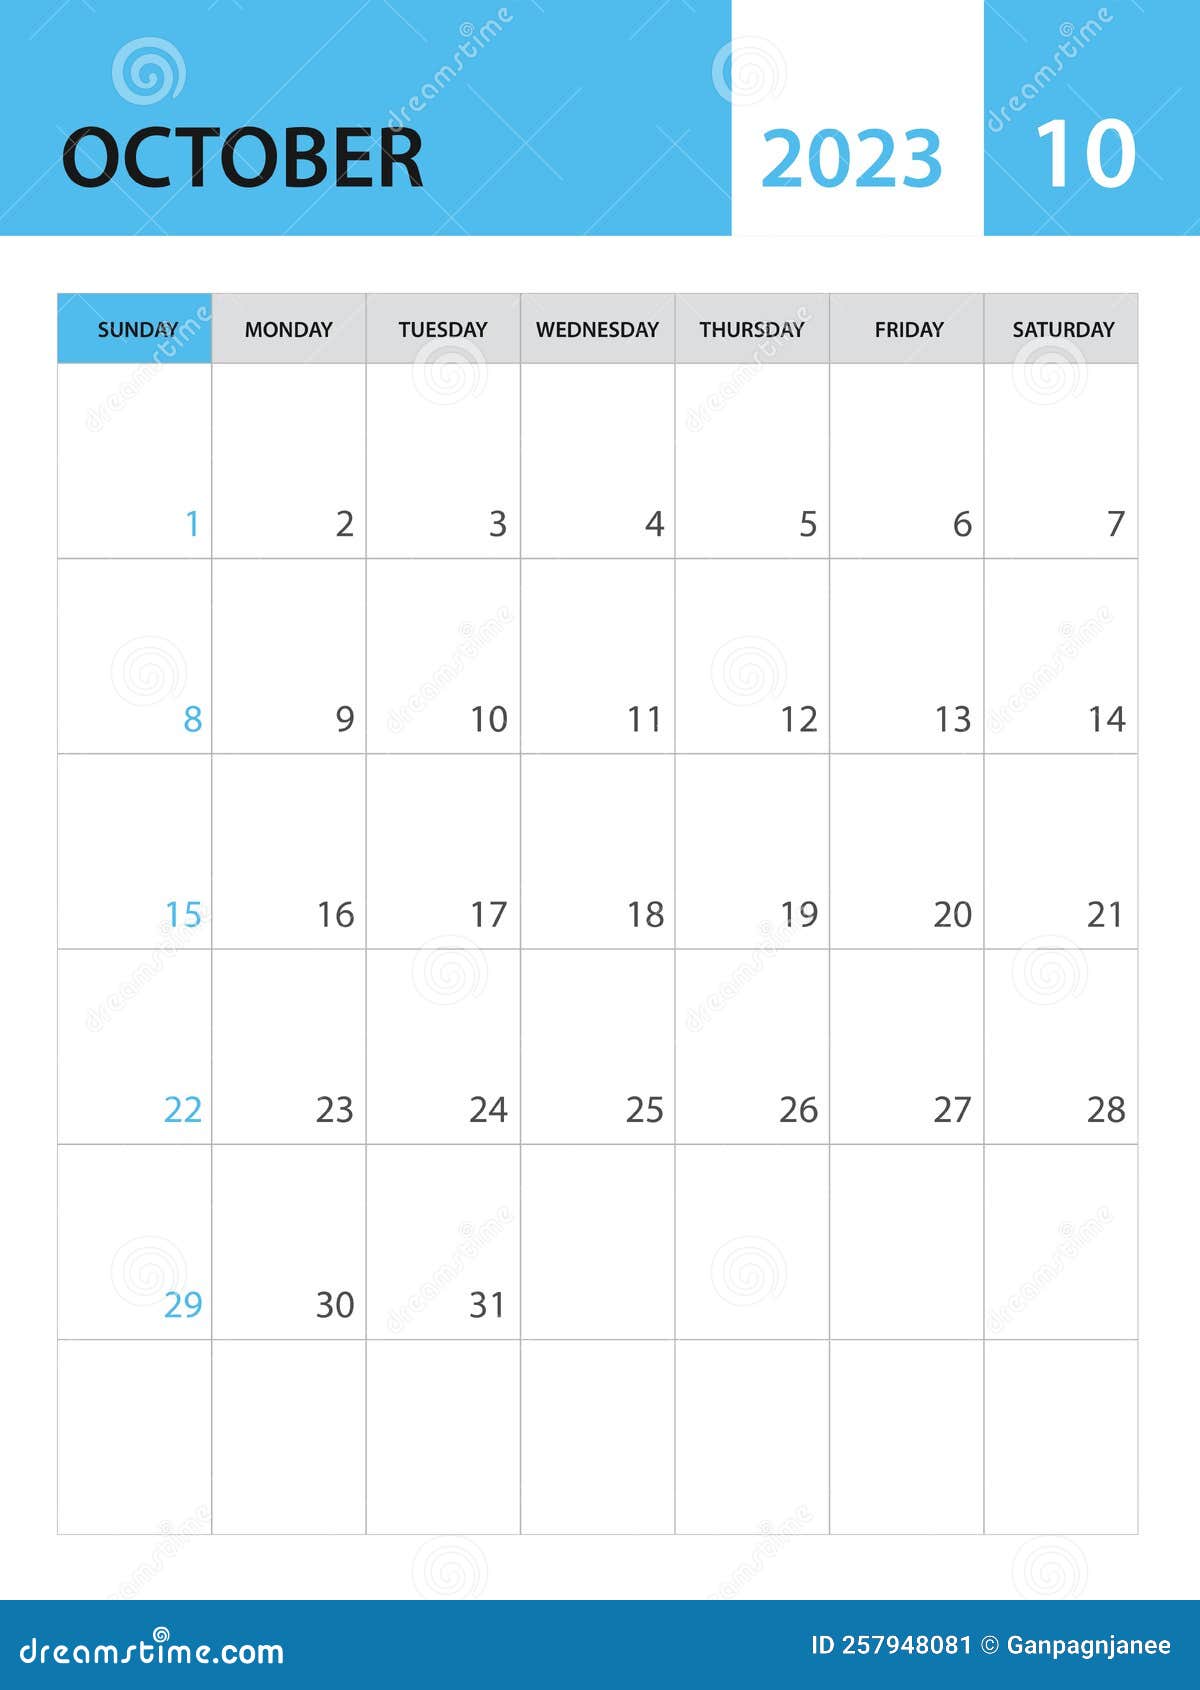 vector de plantilla de calendario mensual 2023 de negocio mínimo creativo.  escritorio, calendario de pared para